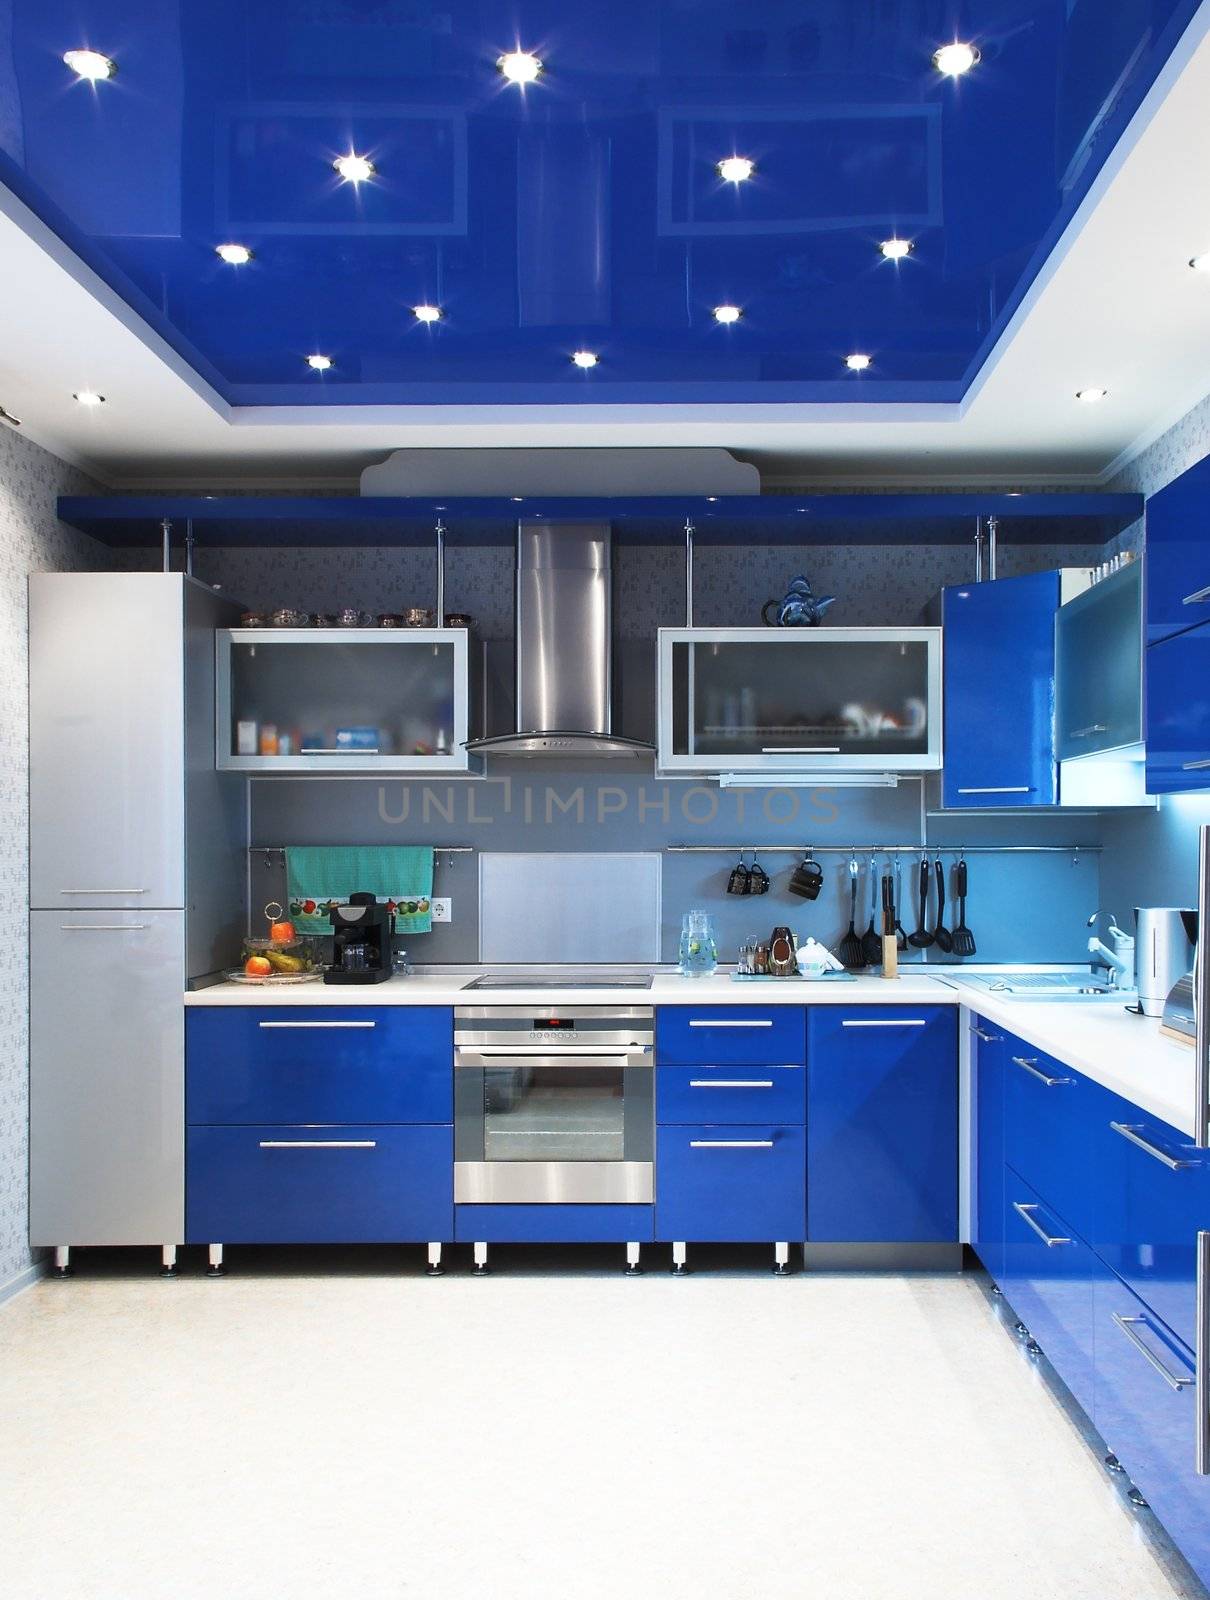 Modern kitchen interior in blue